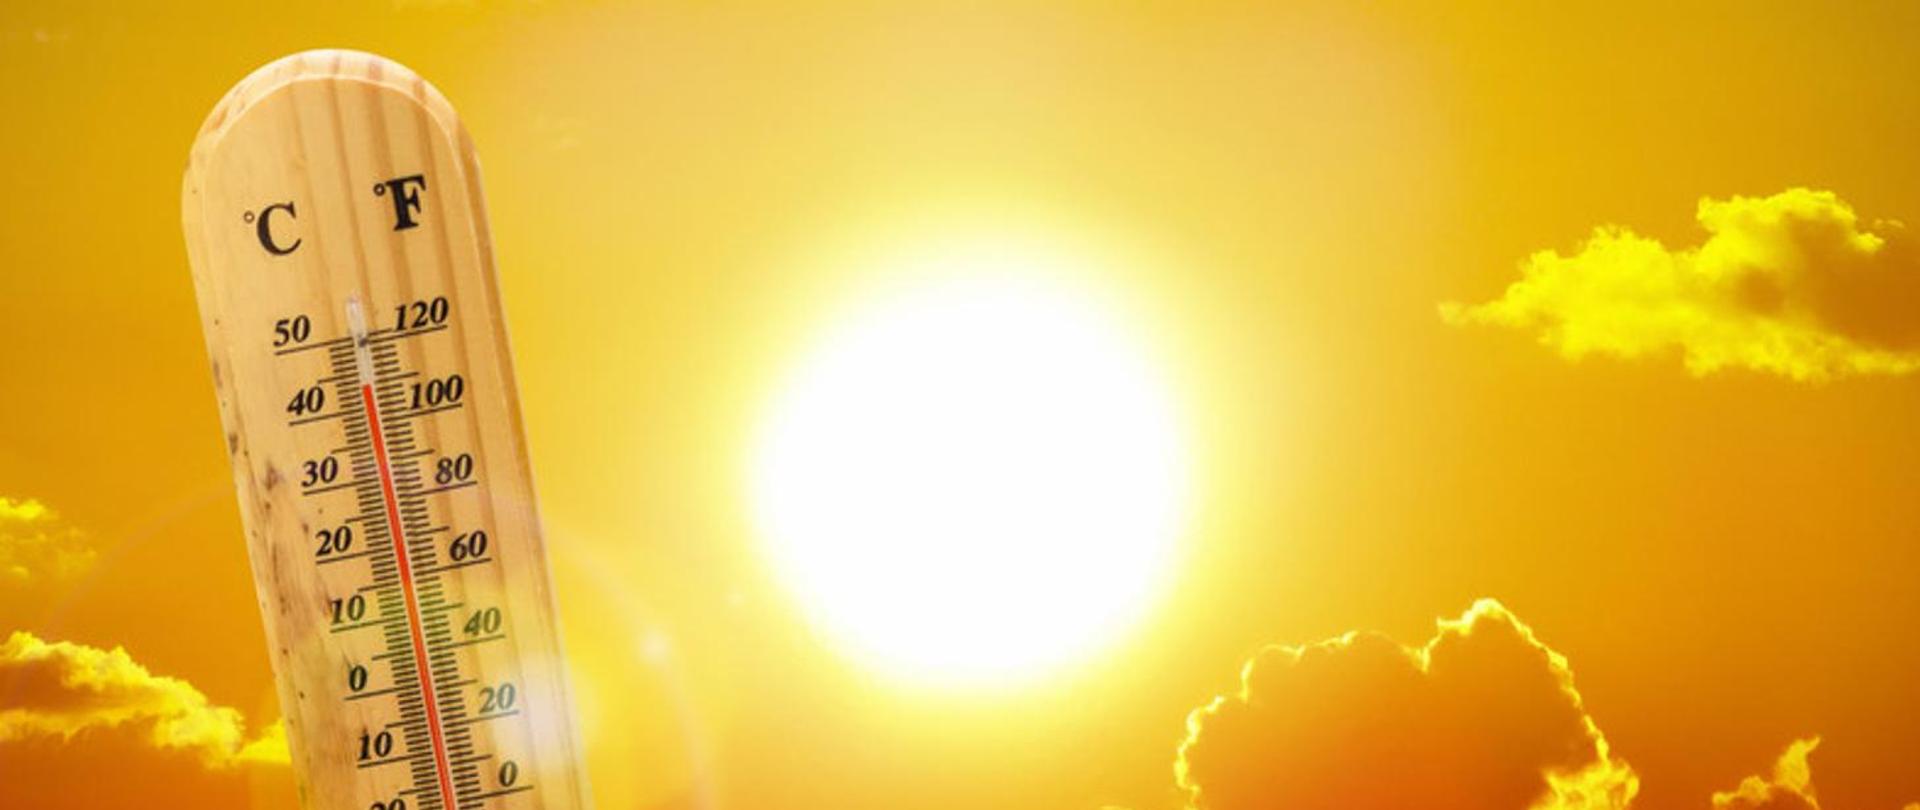 Zdjęcie przedstawia termometr ze wskazaną temperaturą 40 stopni Cejsjusza na tle rażącego słońca